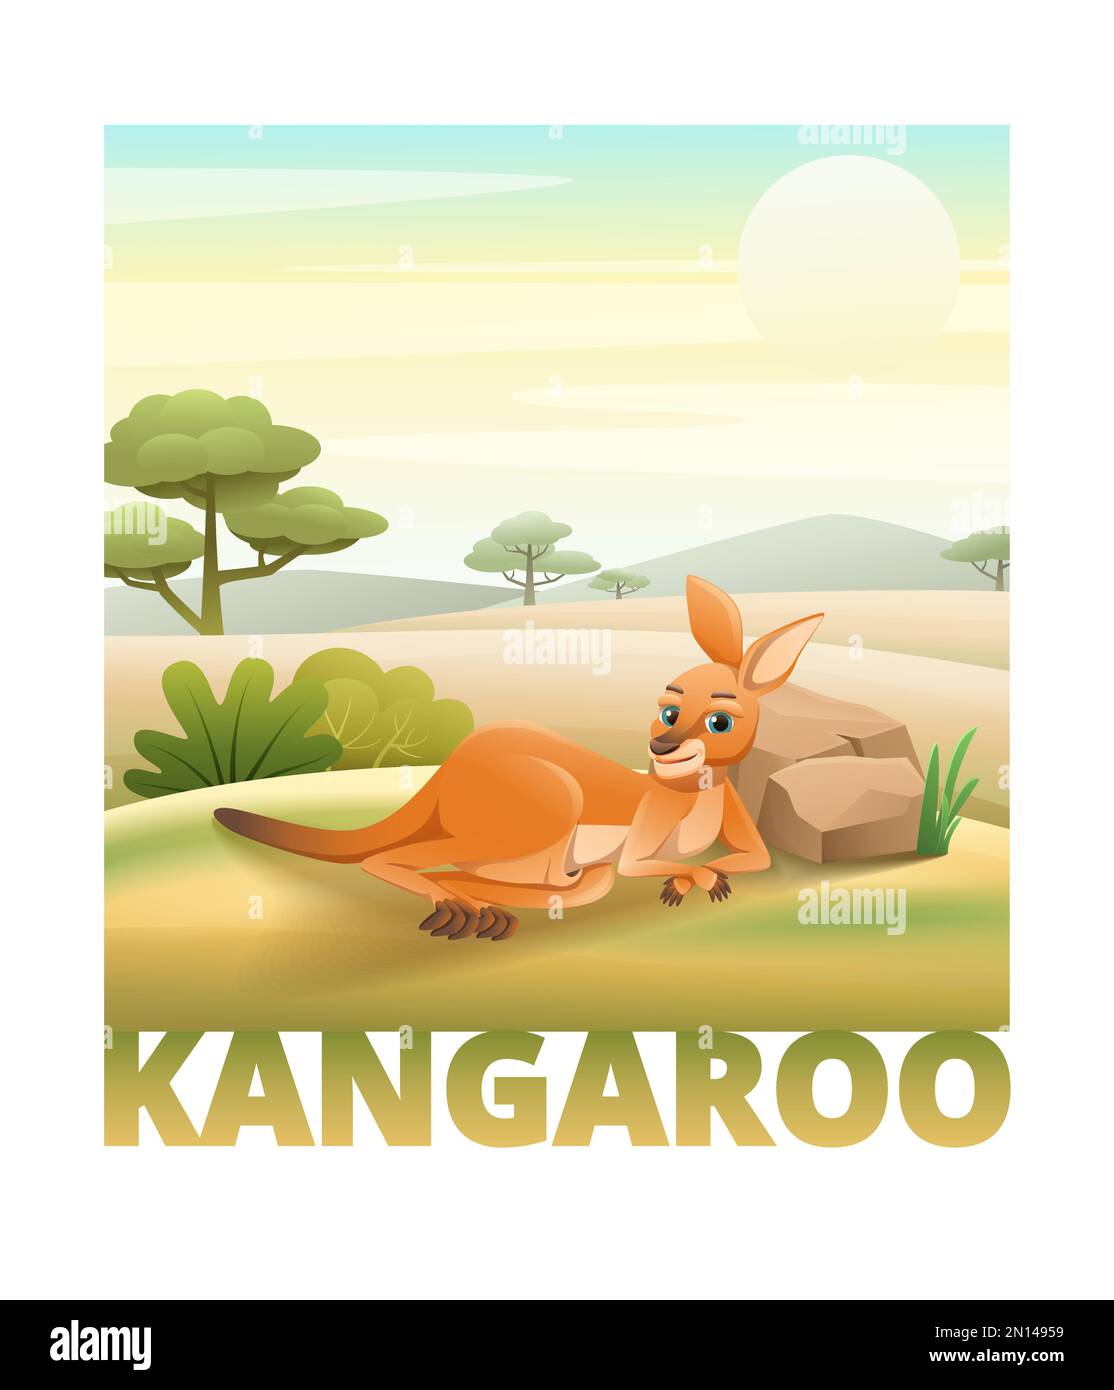 Süßes Känguru, das auf einer grünen, einfarbigen Vektorgrafik ruht Stock Vektor